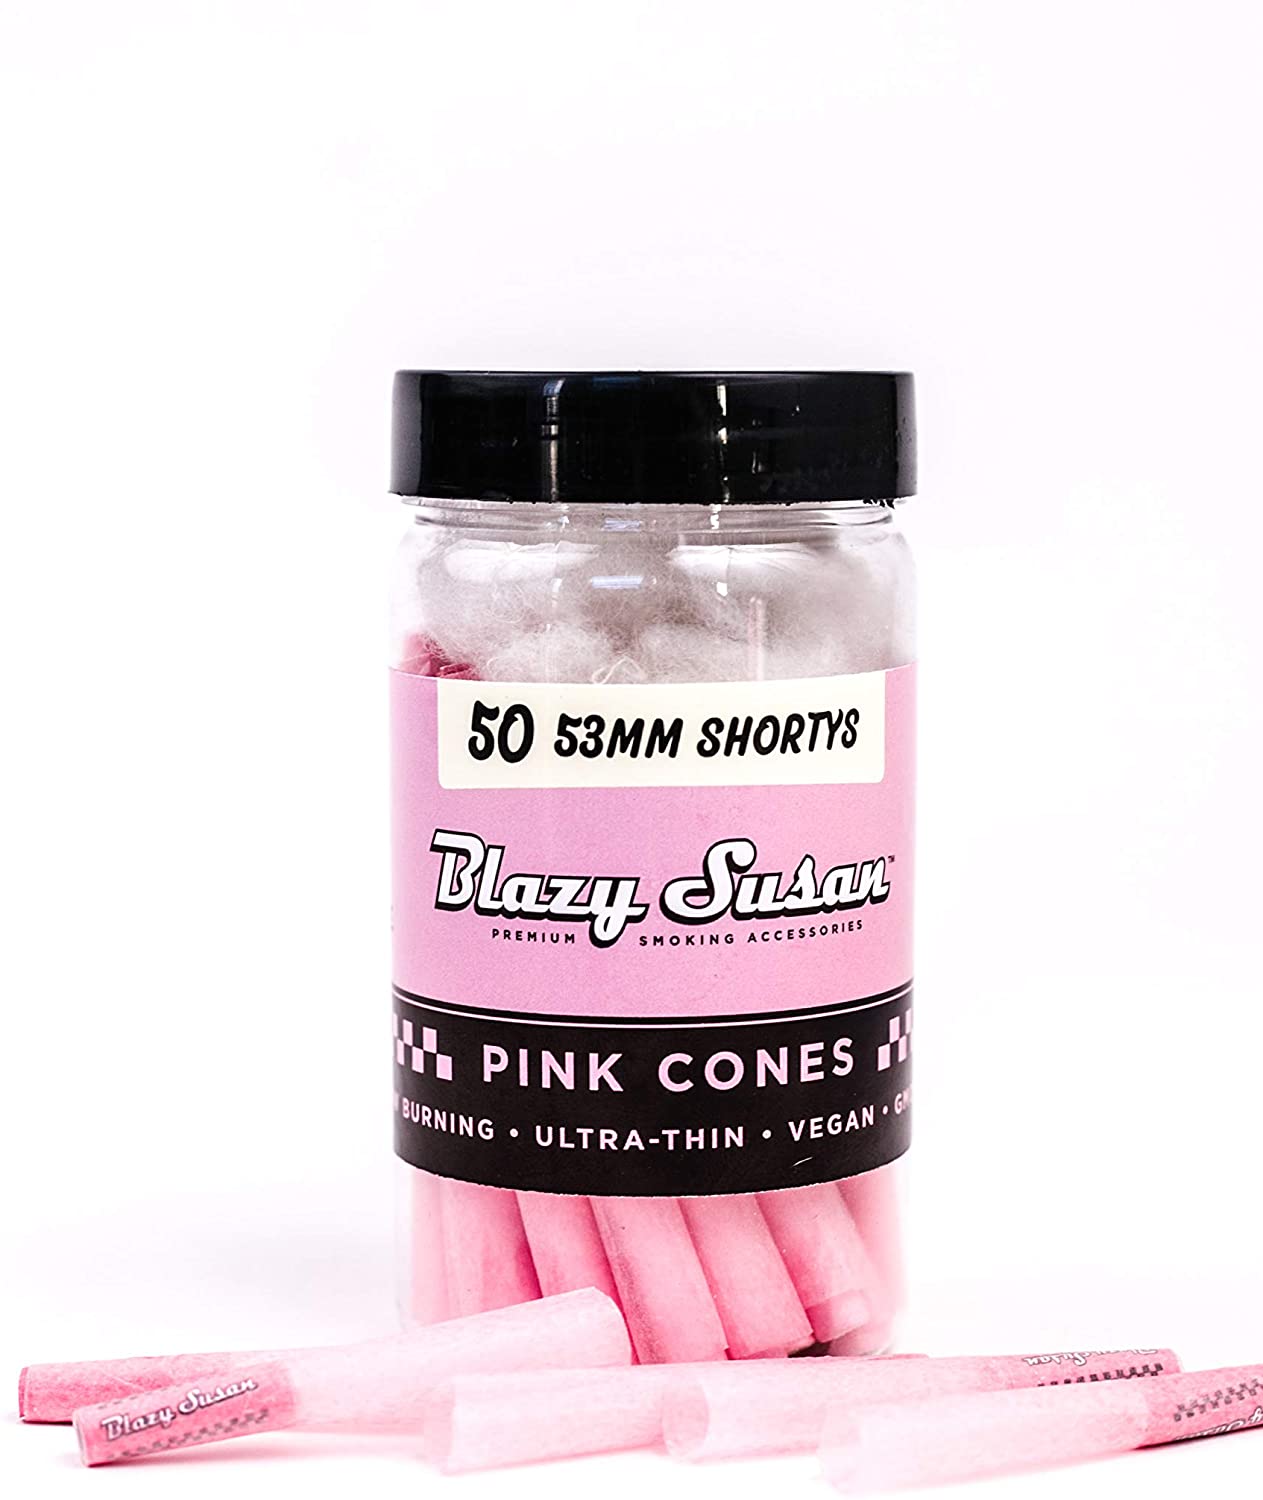 Blazy Susan Shortys Pink Cones 53mm 50CT